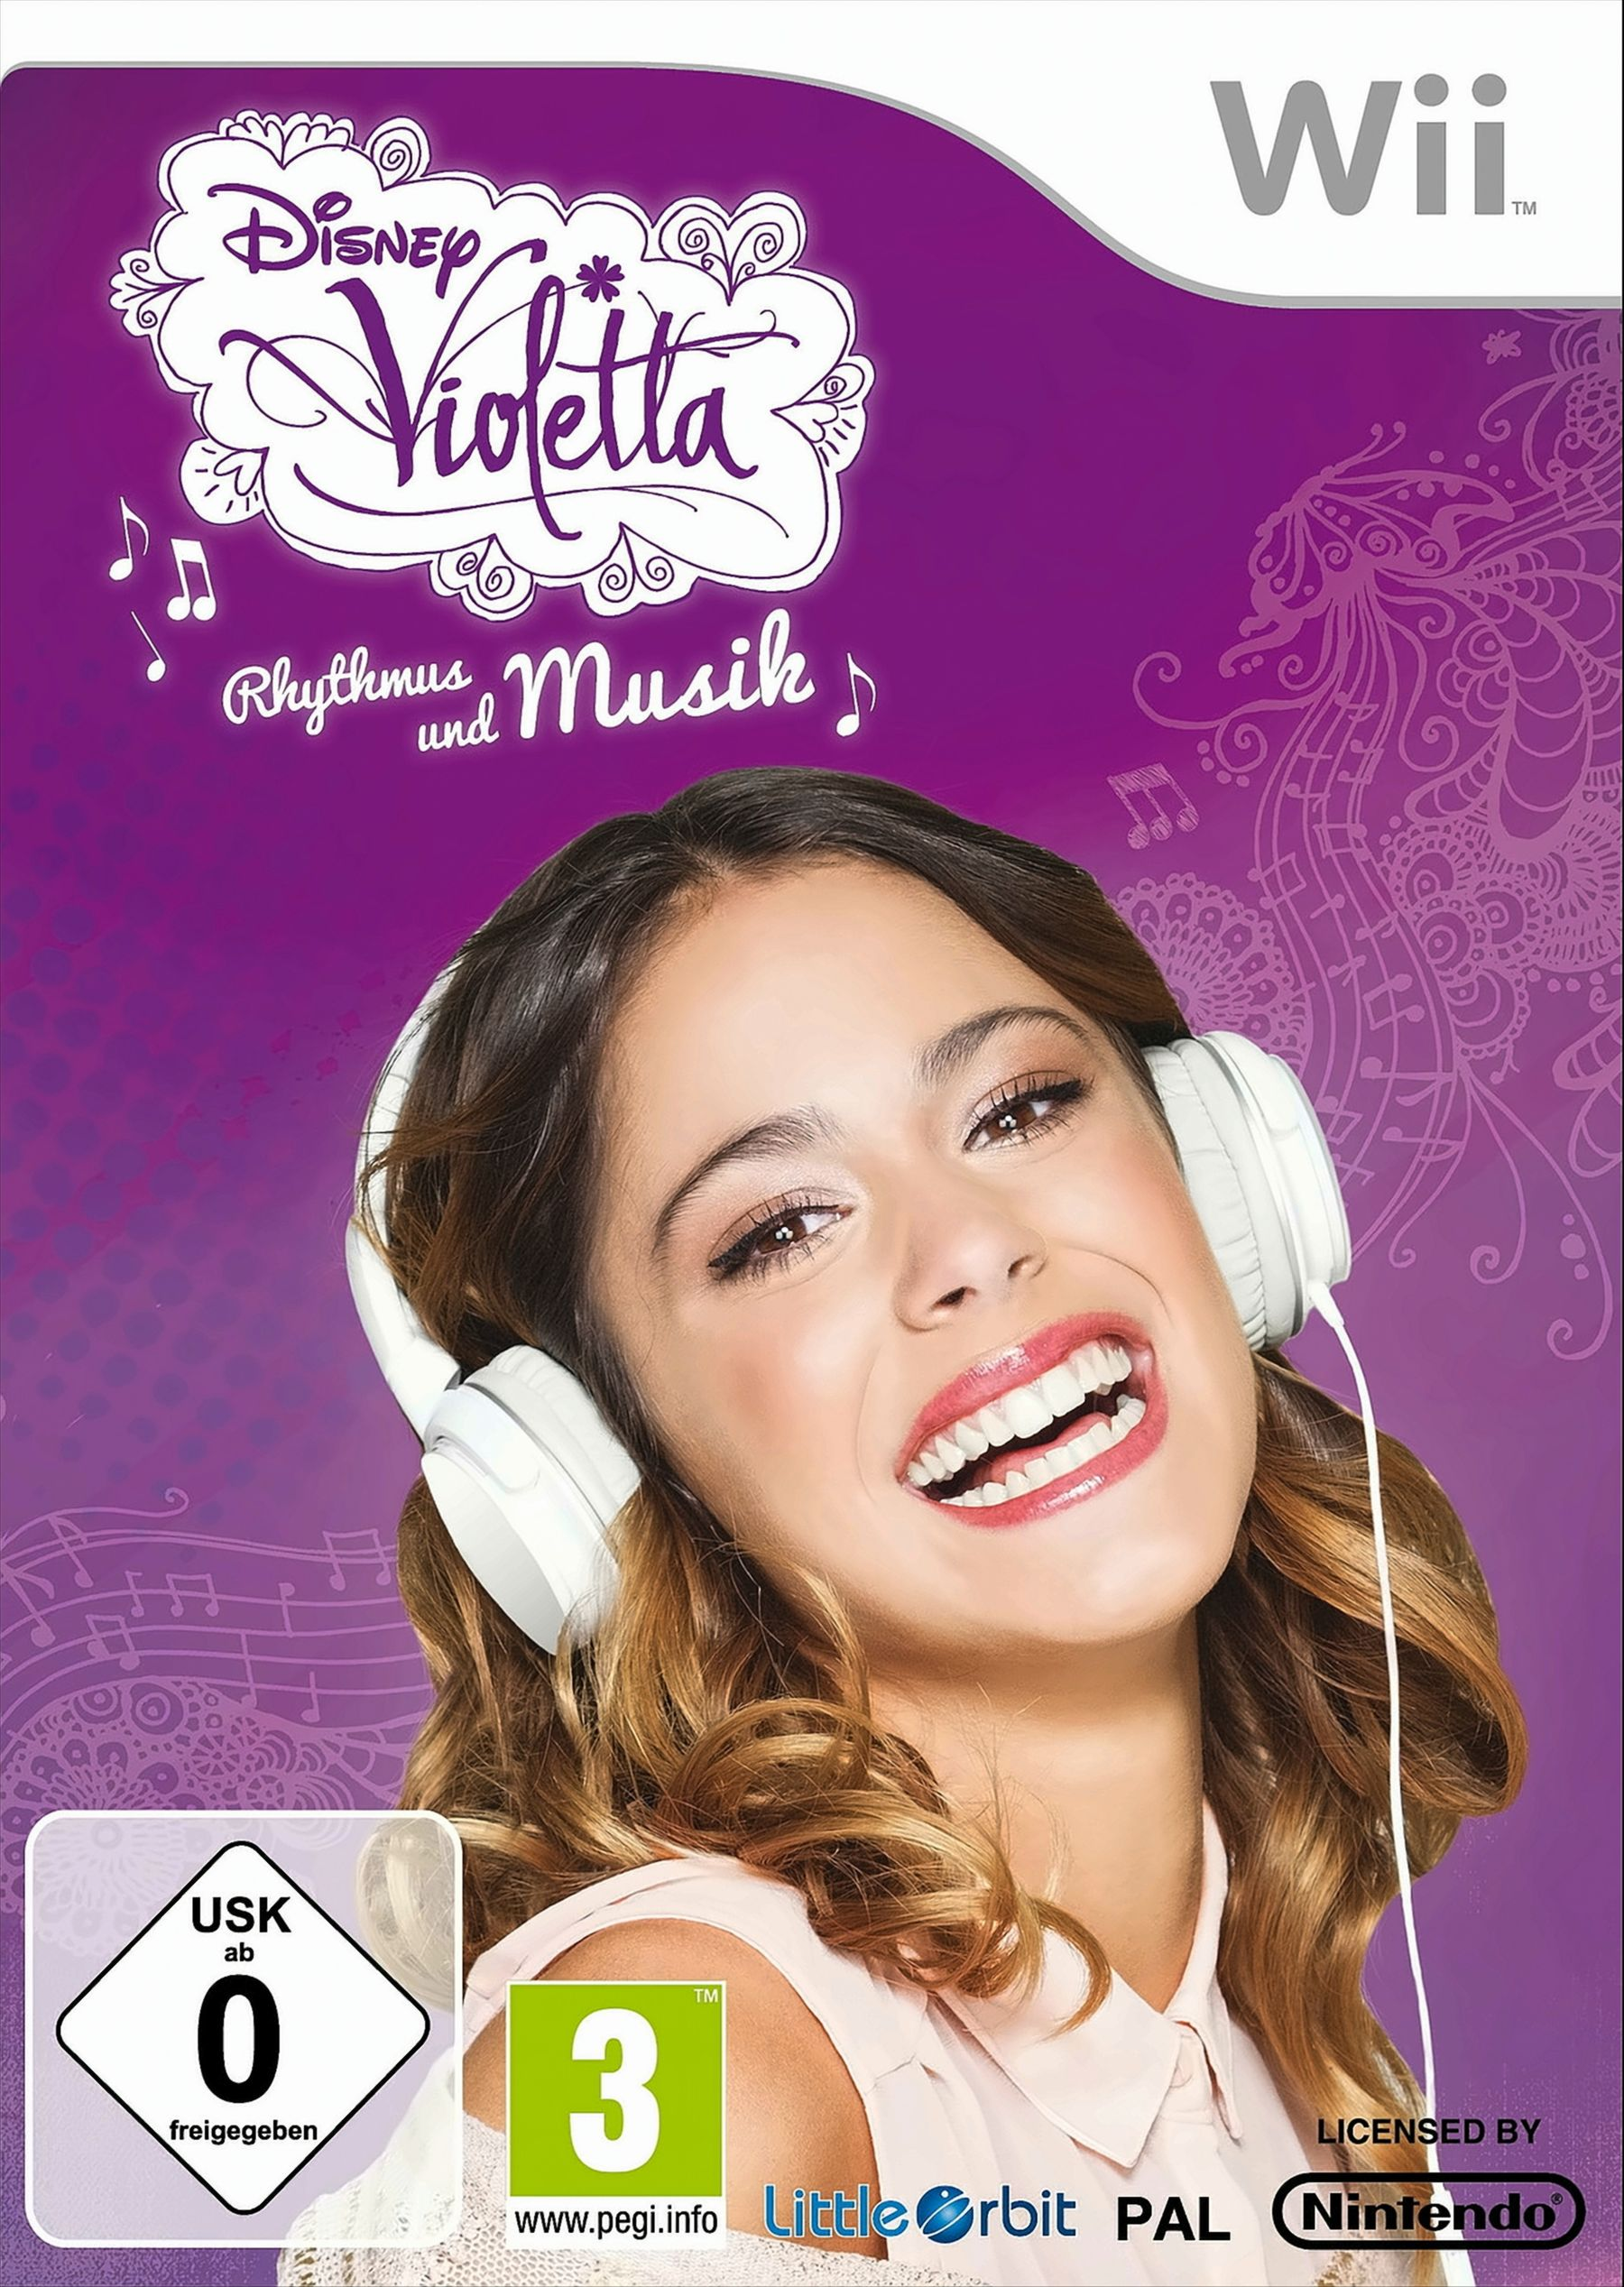 Disney [Nintendo Violetta: - Musik Rhythmus Wii] und